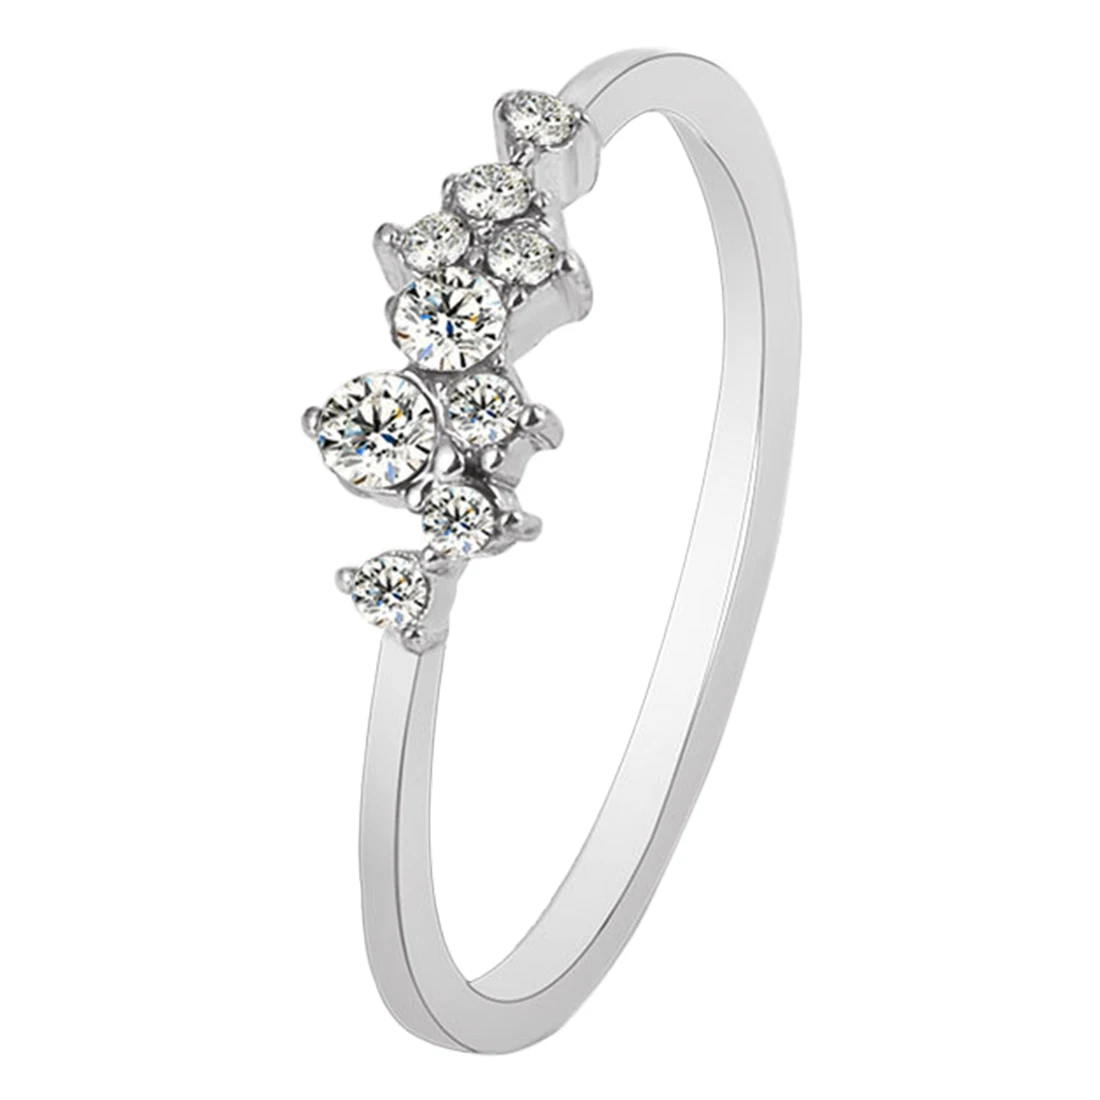 Лидер продаж кольцо с гальваническим покрытием элегантные модные женские палец кольцо ювелирные изделия страз кристалл опал кольца различных размеры